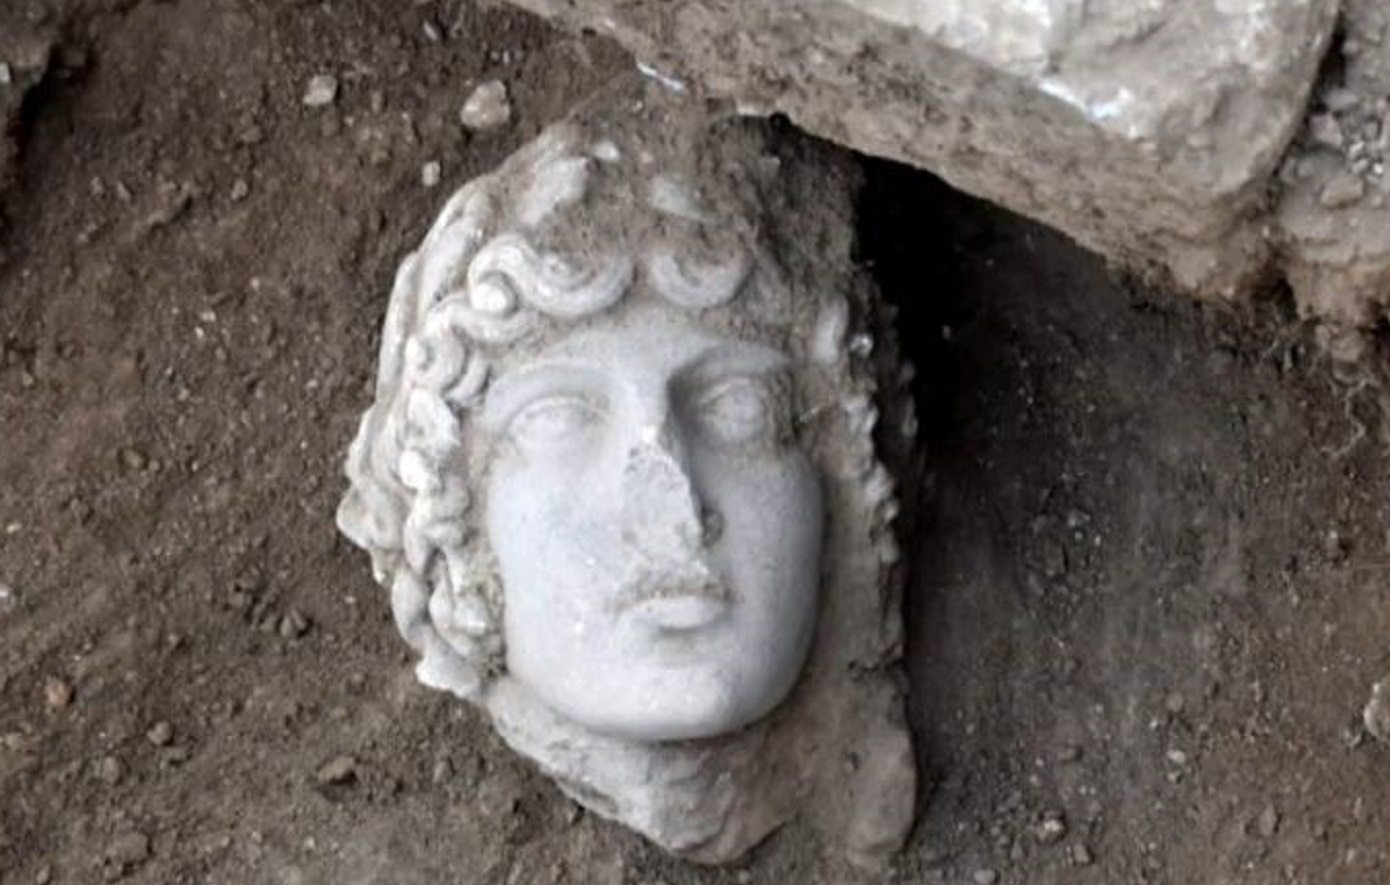 Φοιτητές του ΑΠΘ ανακάλυψαν αρχαία κεφαλή αγάλματος στον αρχαιολογικό χώρο των Φιλίππων